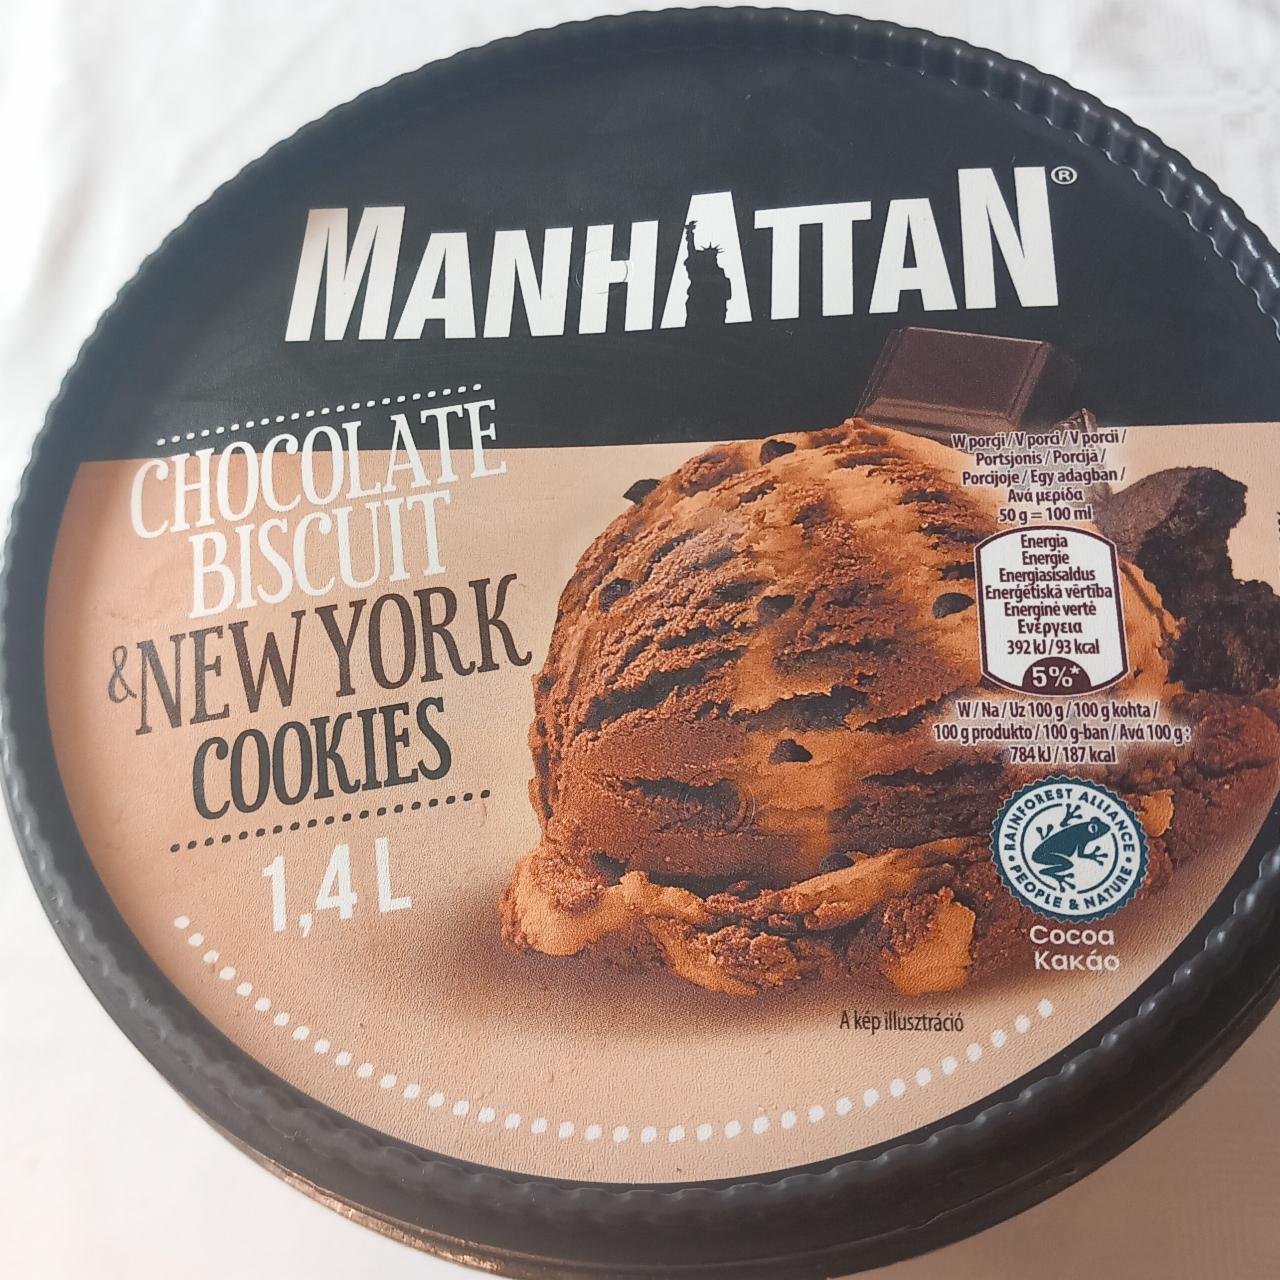 Zdjęcia - Manhattan chocolate biscuit Nestle